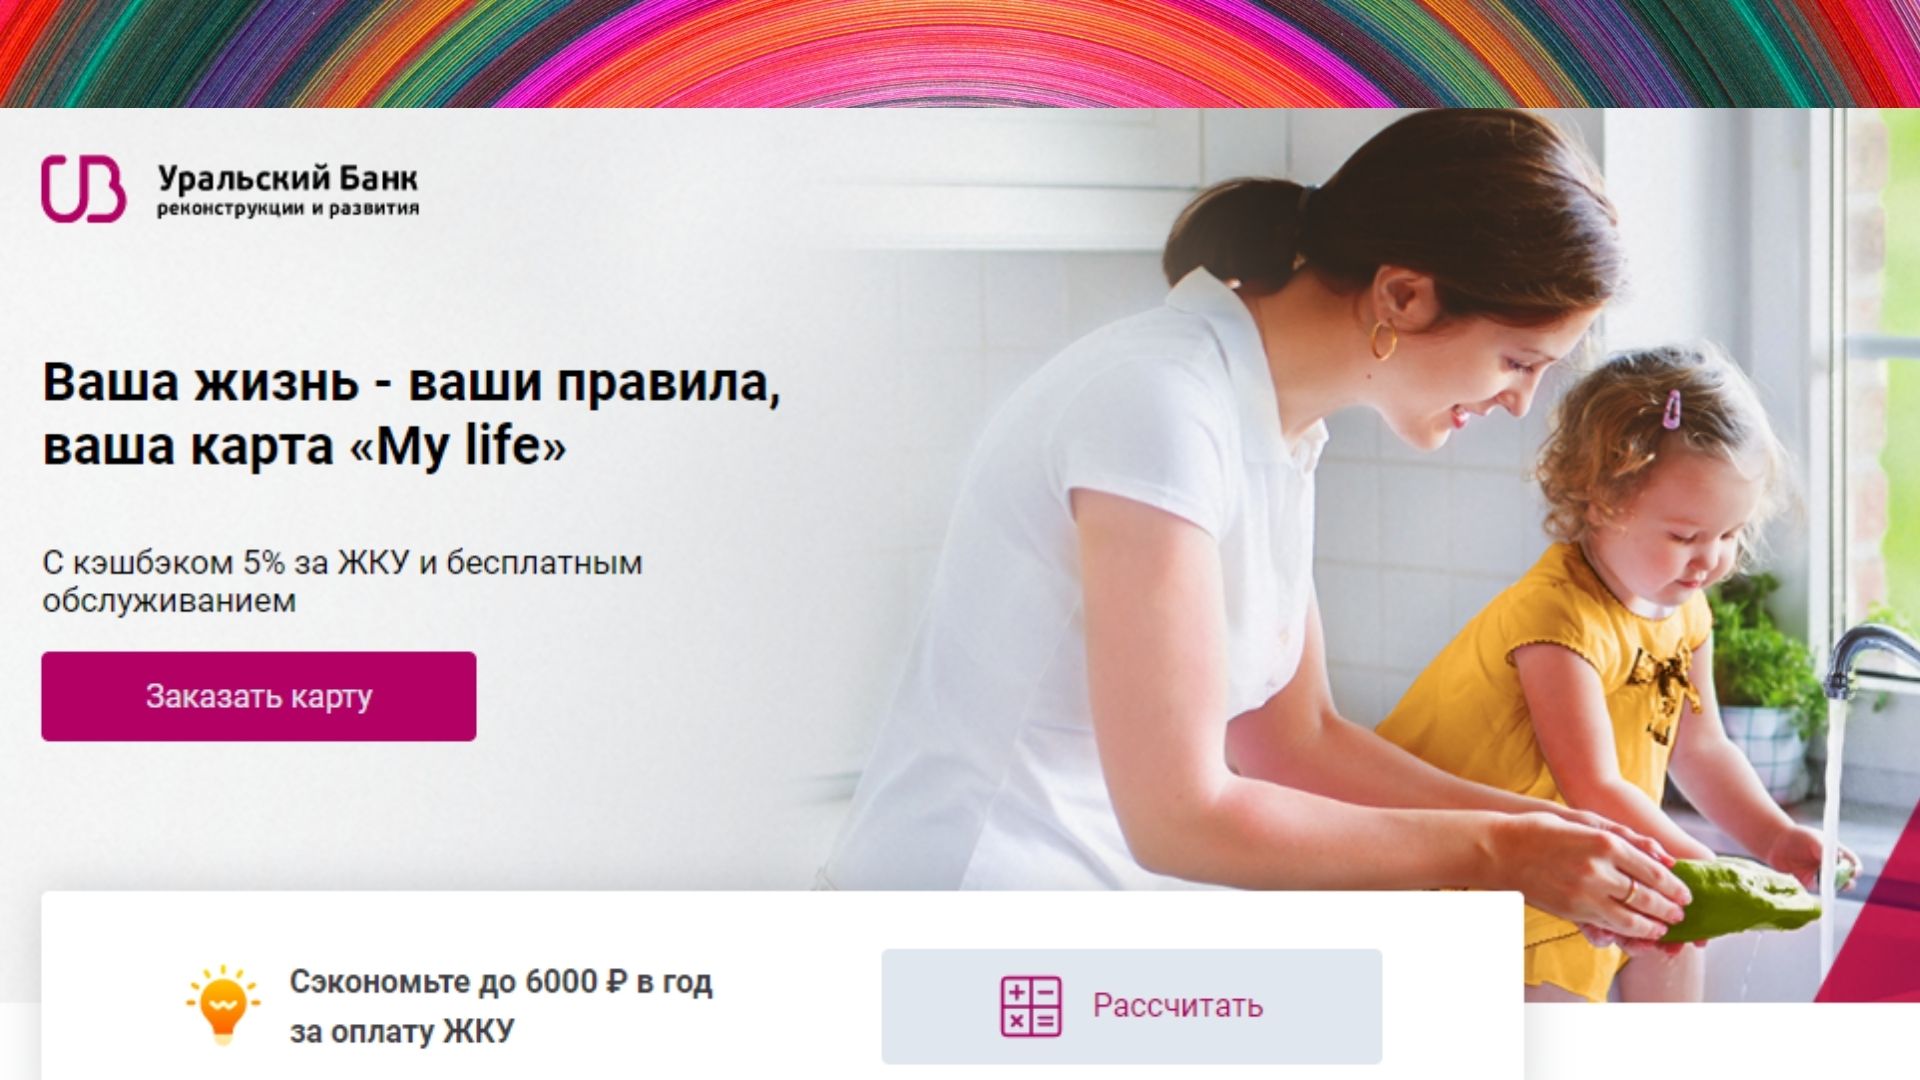 Кэшбэк за коммуналку в каком банке? Банк УБРиР дарит 6 000 рублей кэшбэка за оплату коммунальных платежей